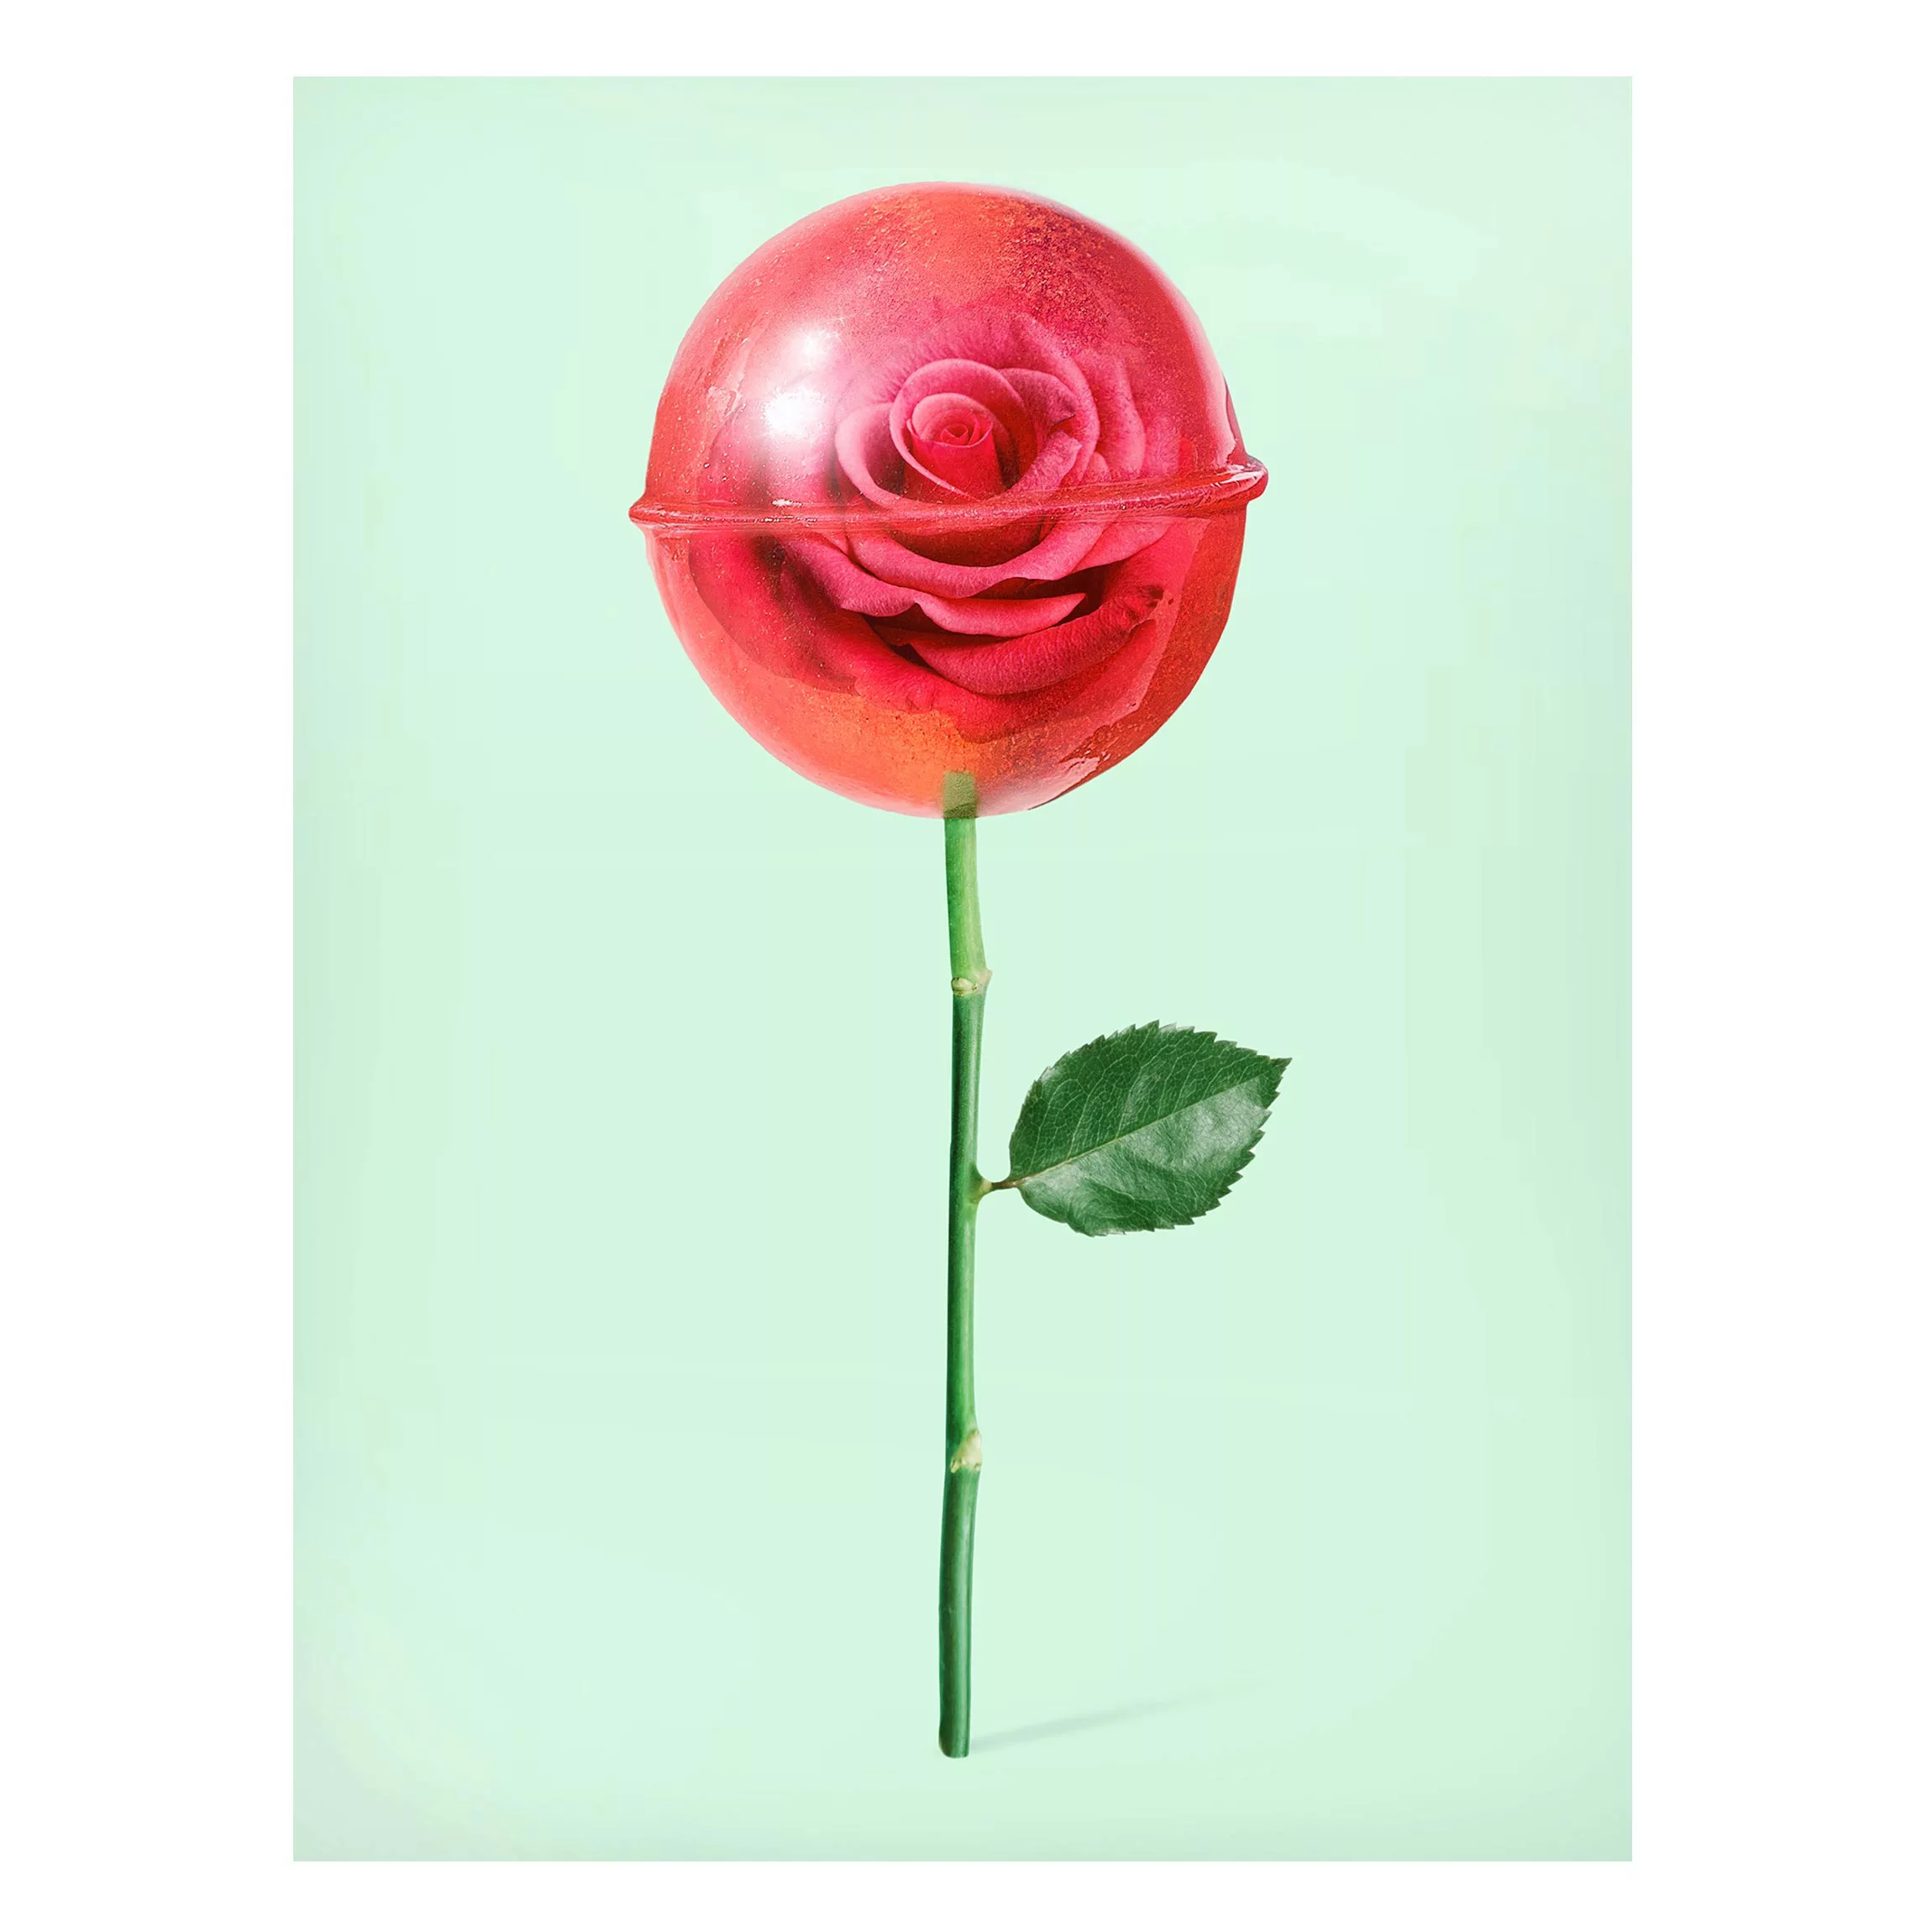 Magnettafel Blumen - Hochformat 3:4 Rose mit Lollipop günstig online kaufen